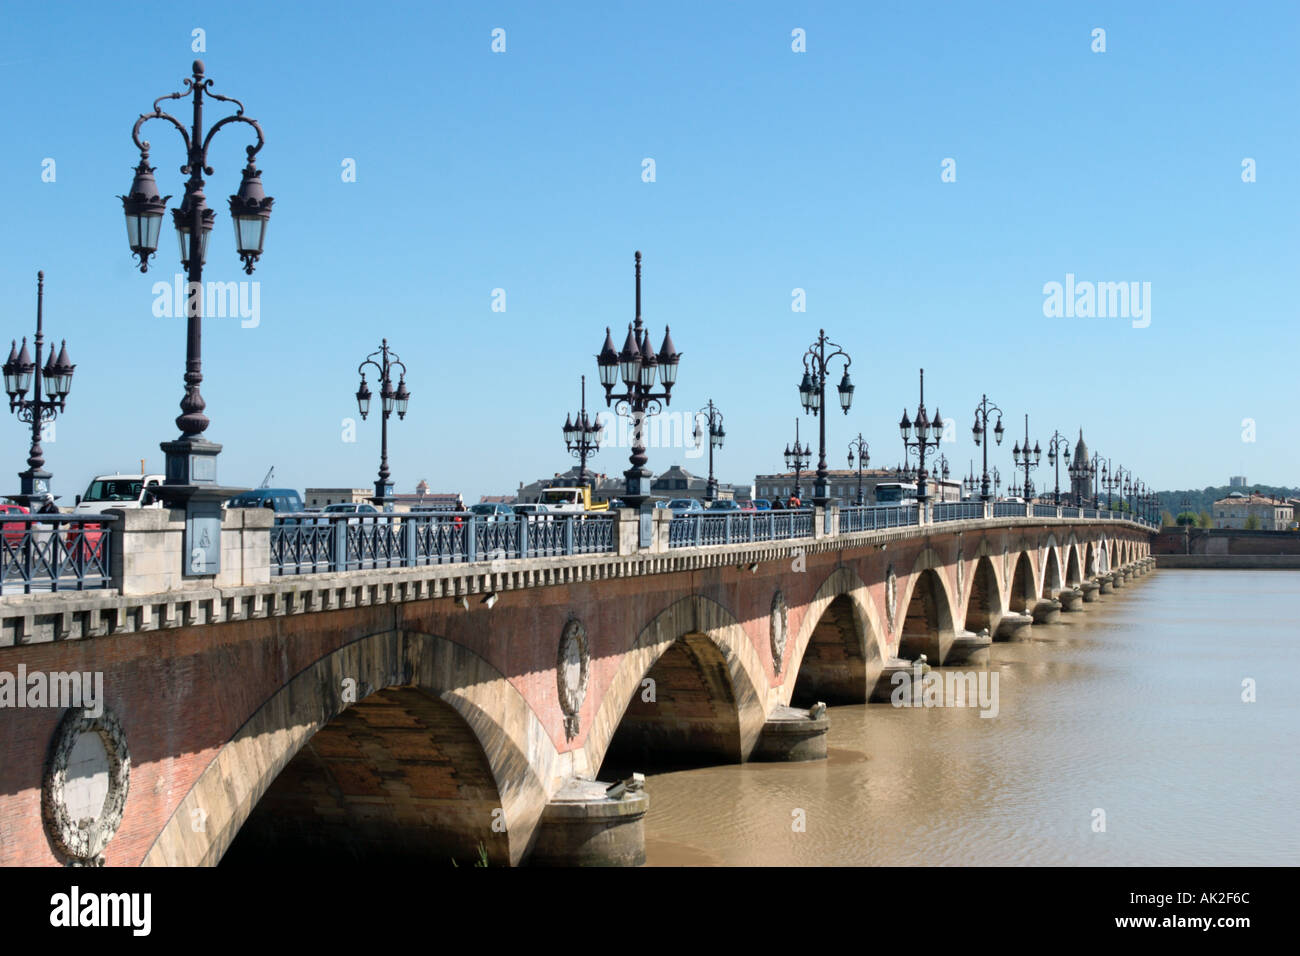 Pont de Pierre, River Garonne, Old Town, Bordeaux, Aquitaine, France Stock Photo